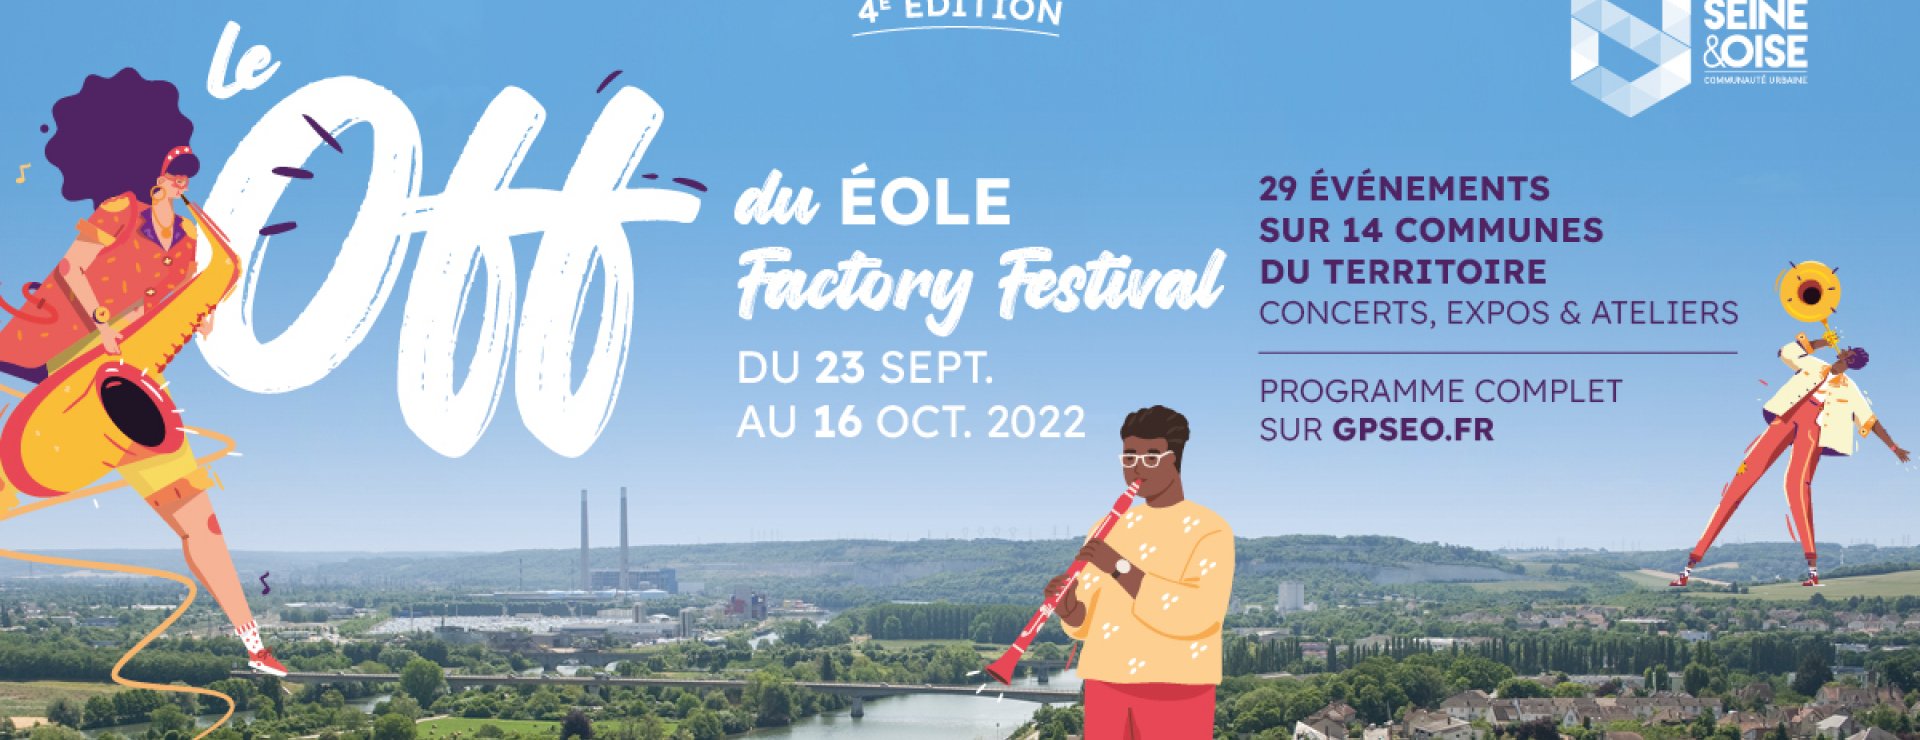 bandeau festival éole off 2022 : photographie Seine titre du festival et personnages musiciens illustrés